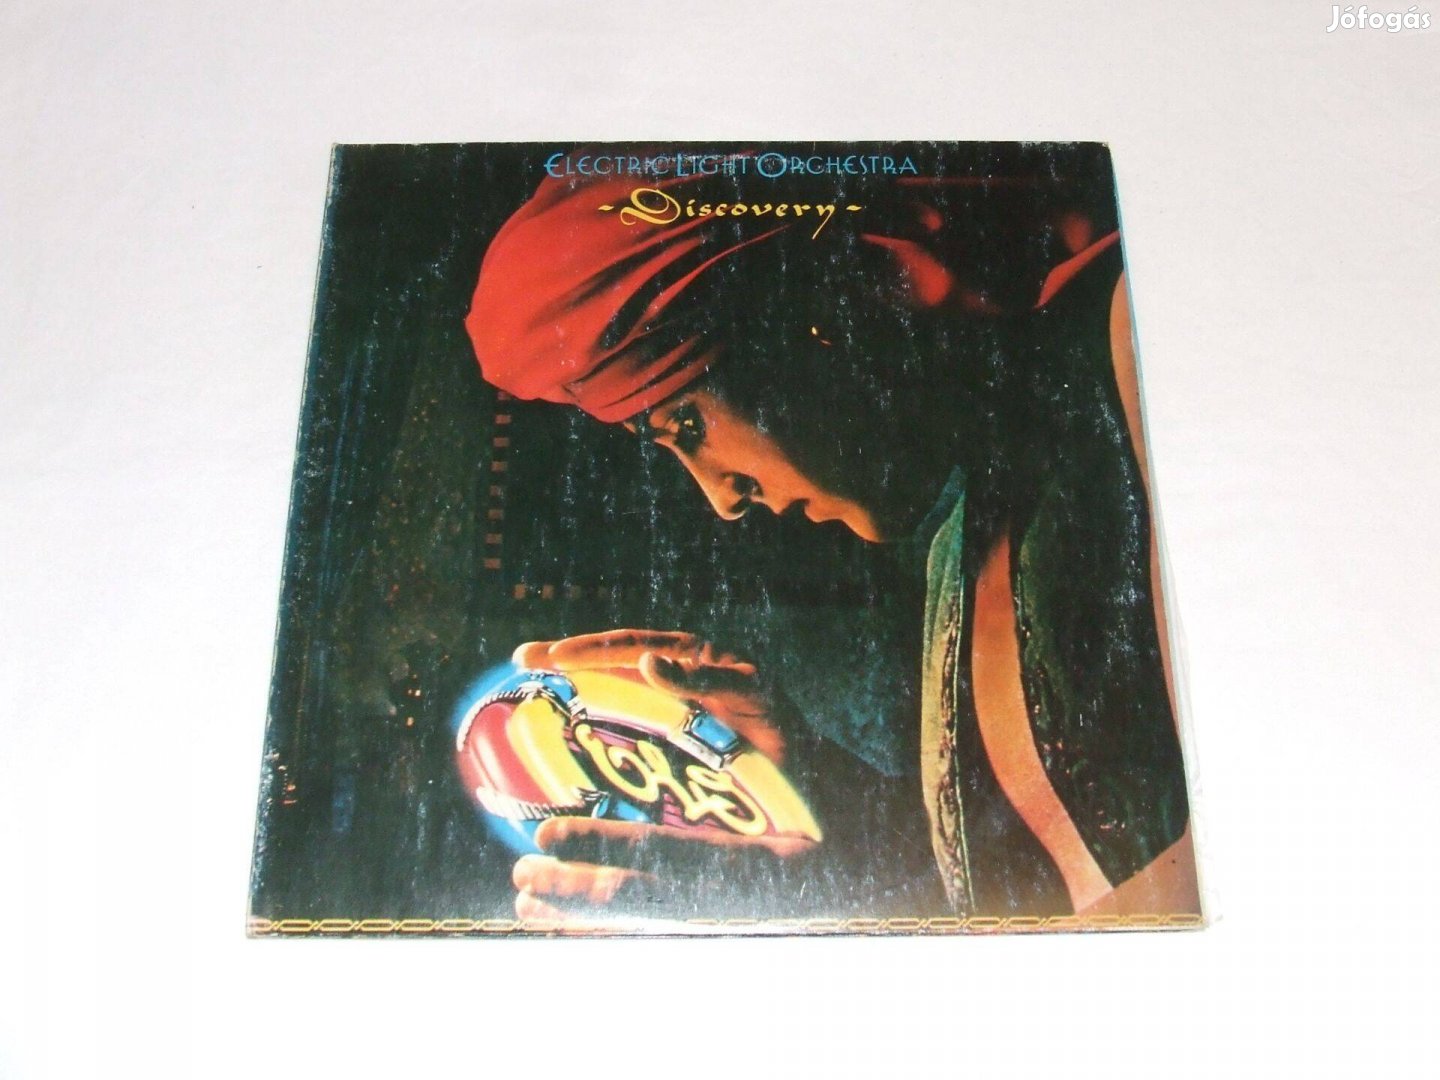 Electric Light Orchestra: Discovery - bakelit lemez eladó!